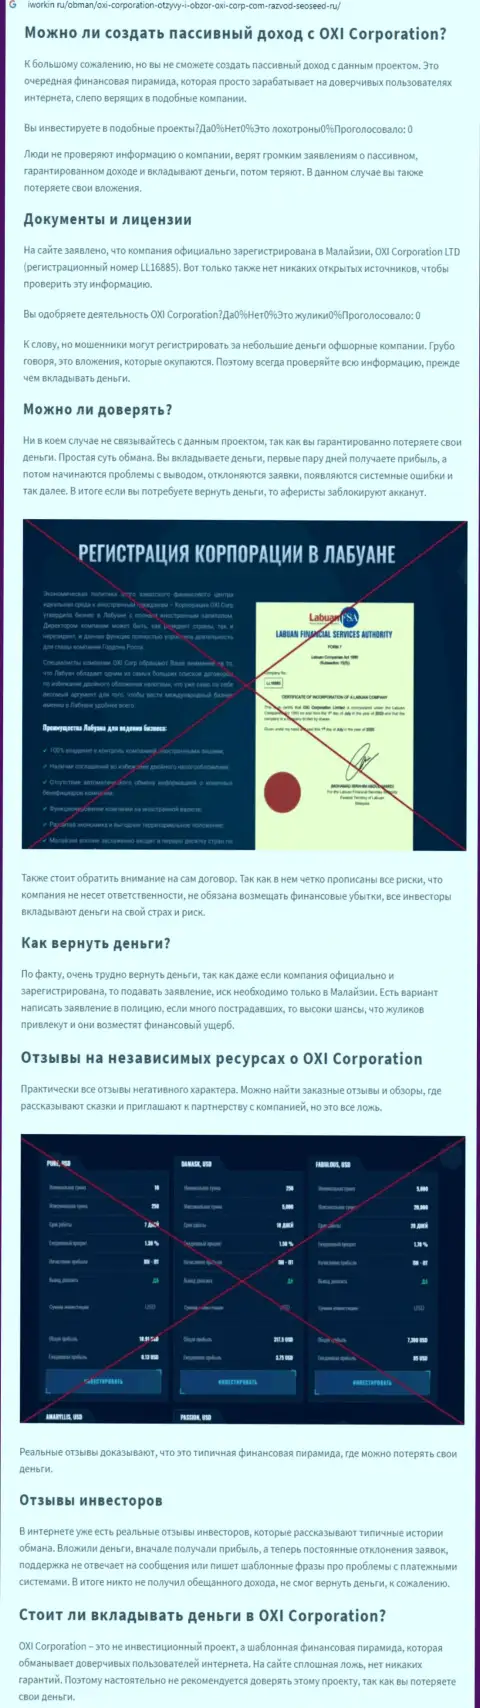 О перечисленных в OXI Corporation Ltd накоплениях можете позабыть, прикарманивают все до последнего рубля (обзор махинаций)